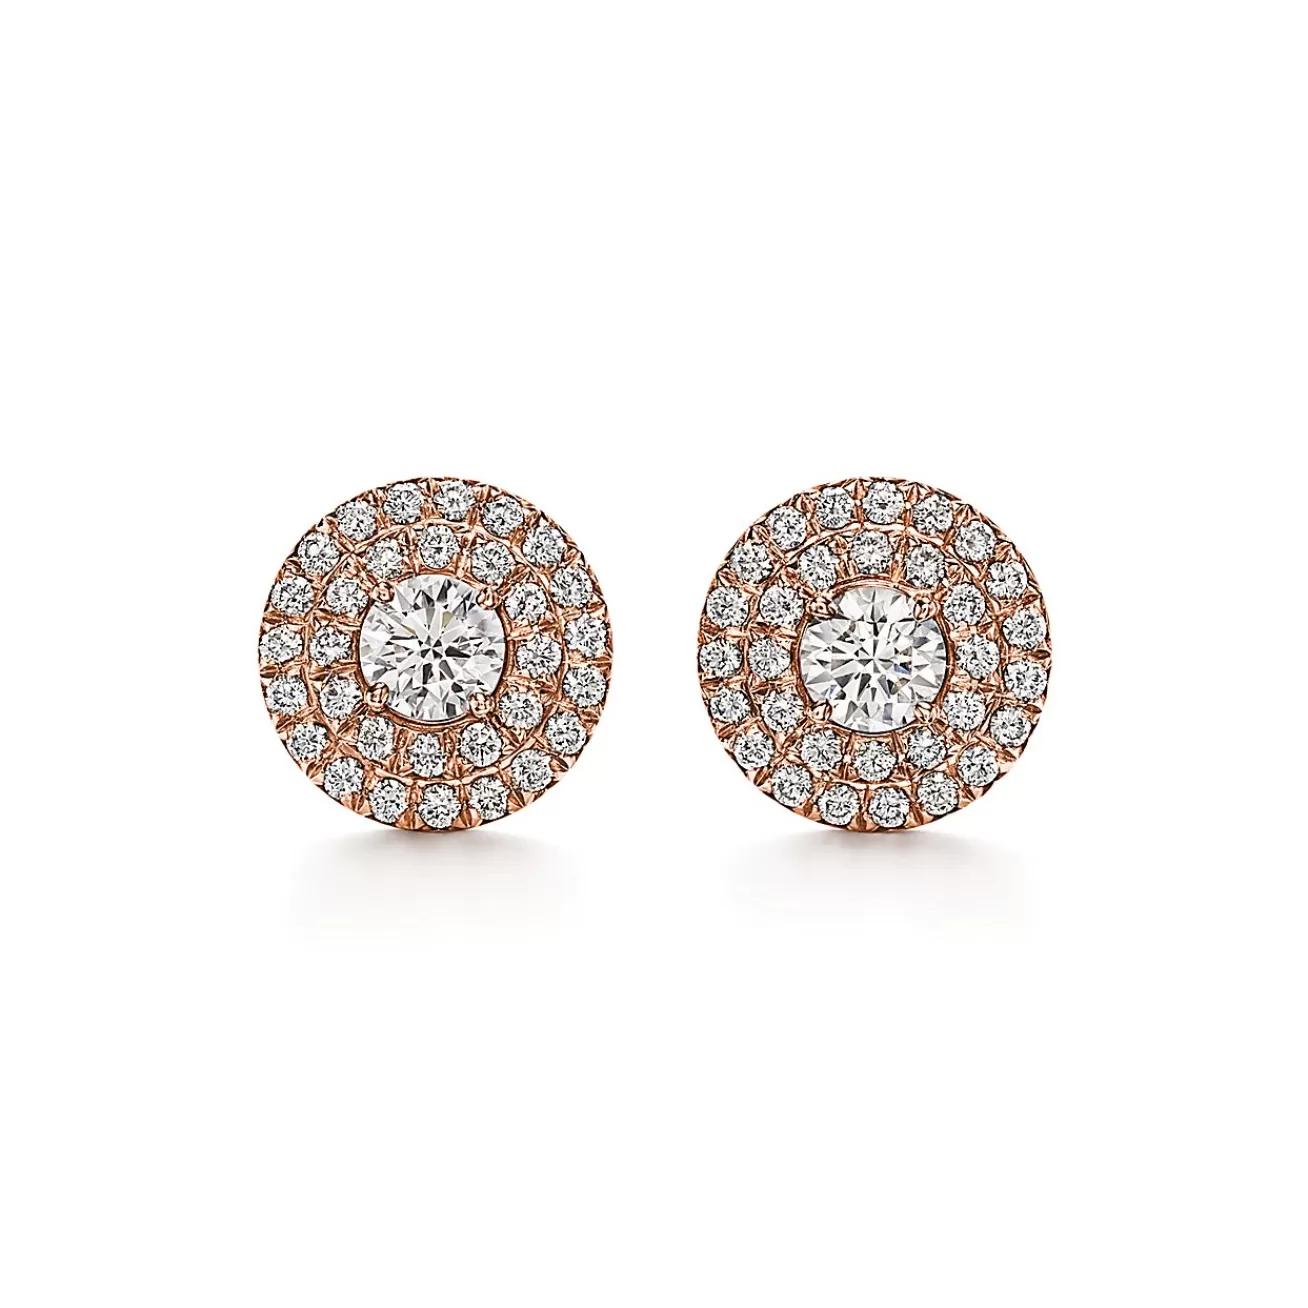 Tiffany & Co. Tiffany Soleste® earrings in 18k rose gold with diamonds. | ^ Earrings | Rose Gold Jewelry